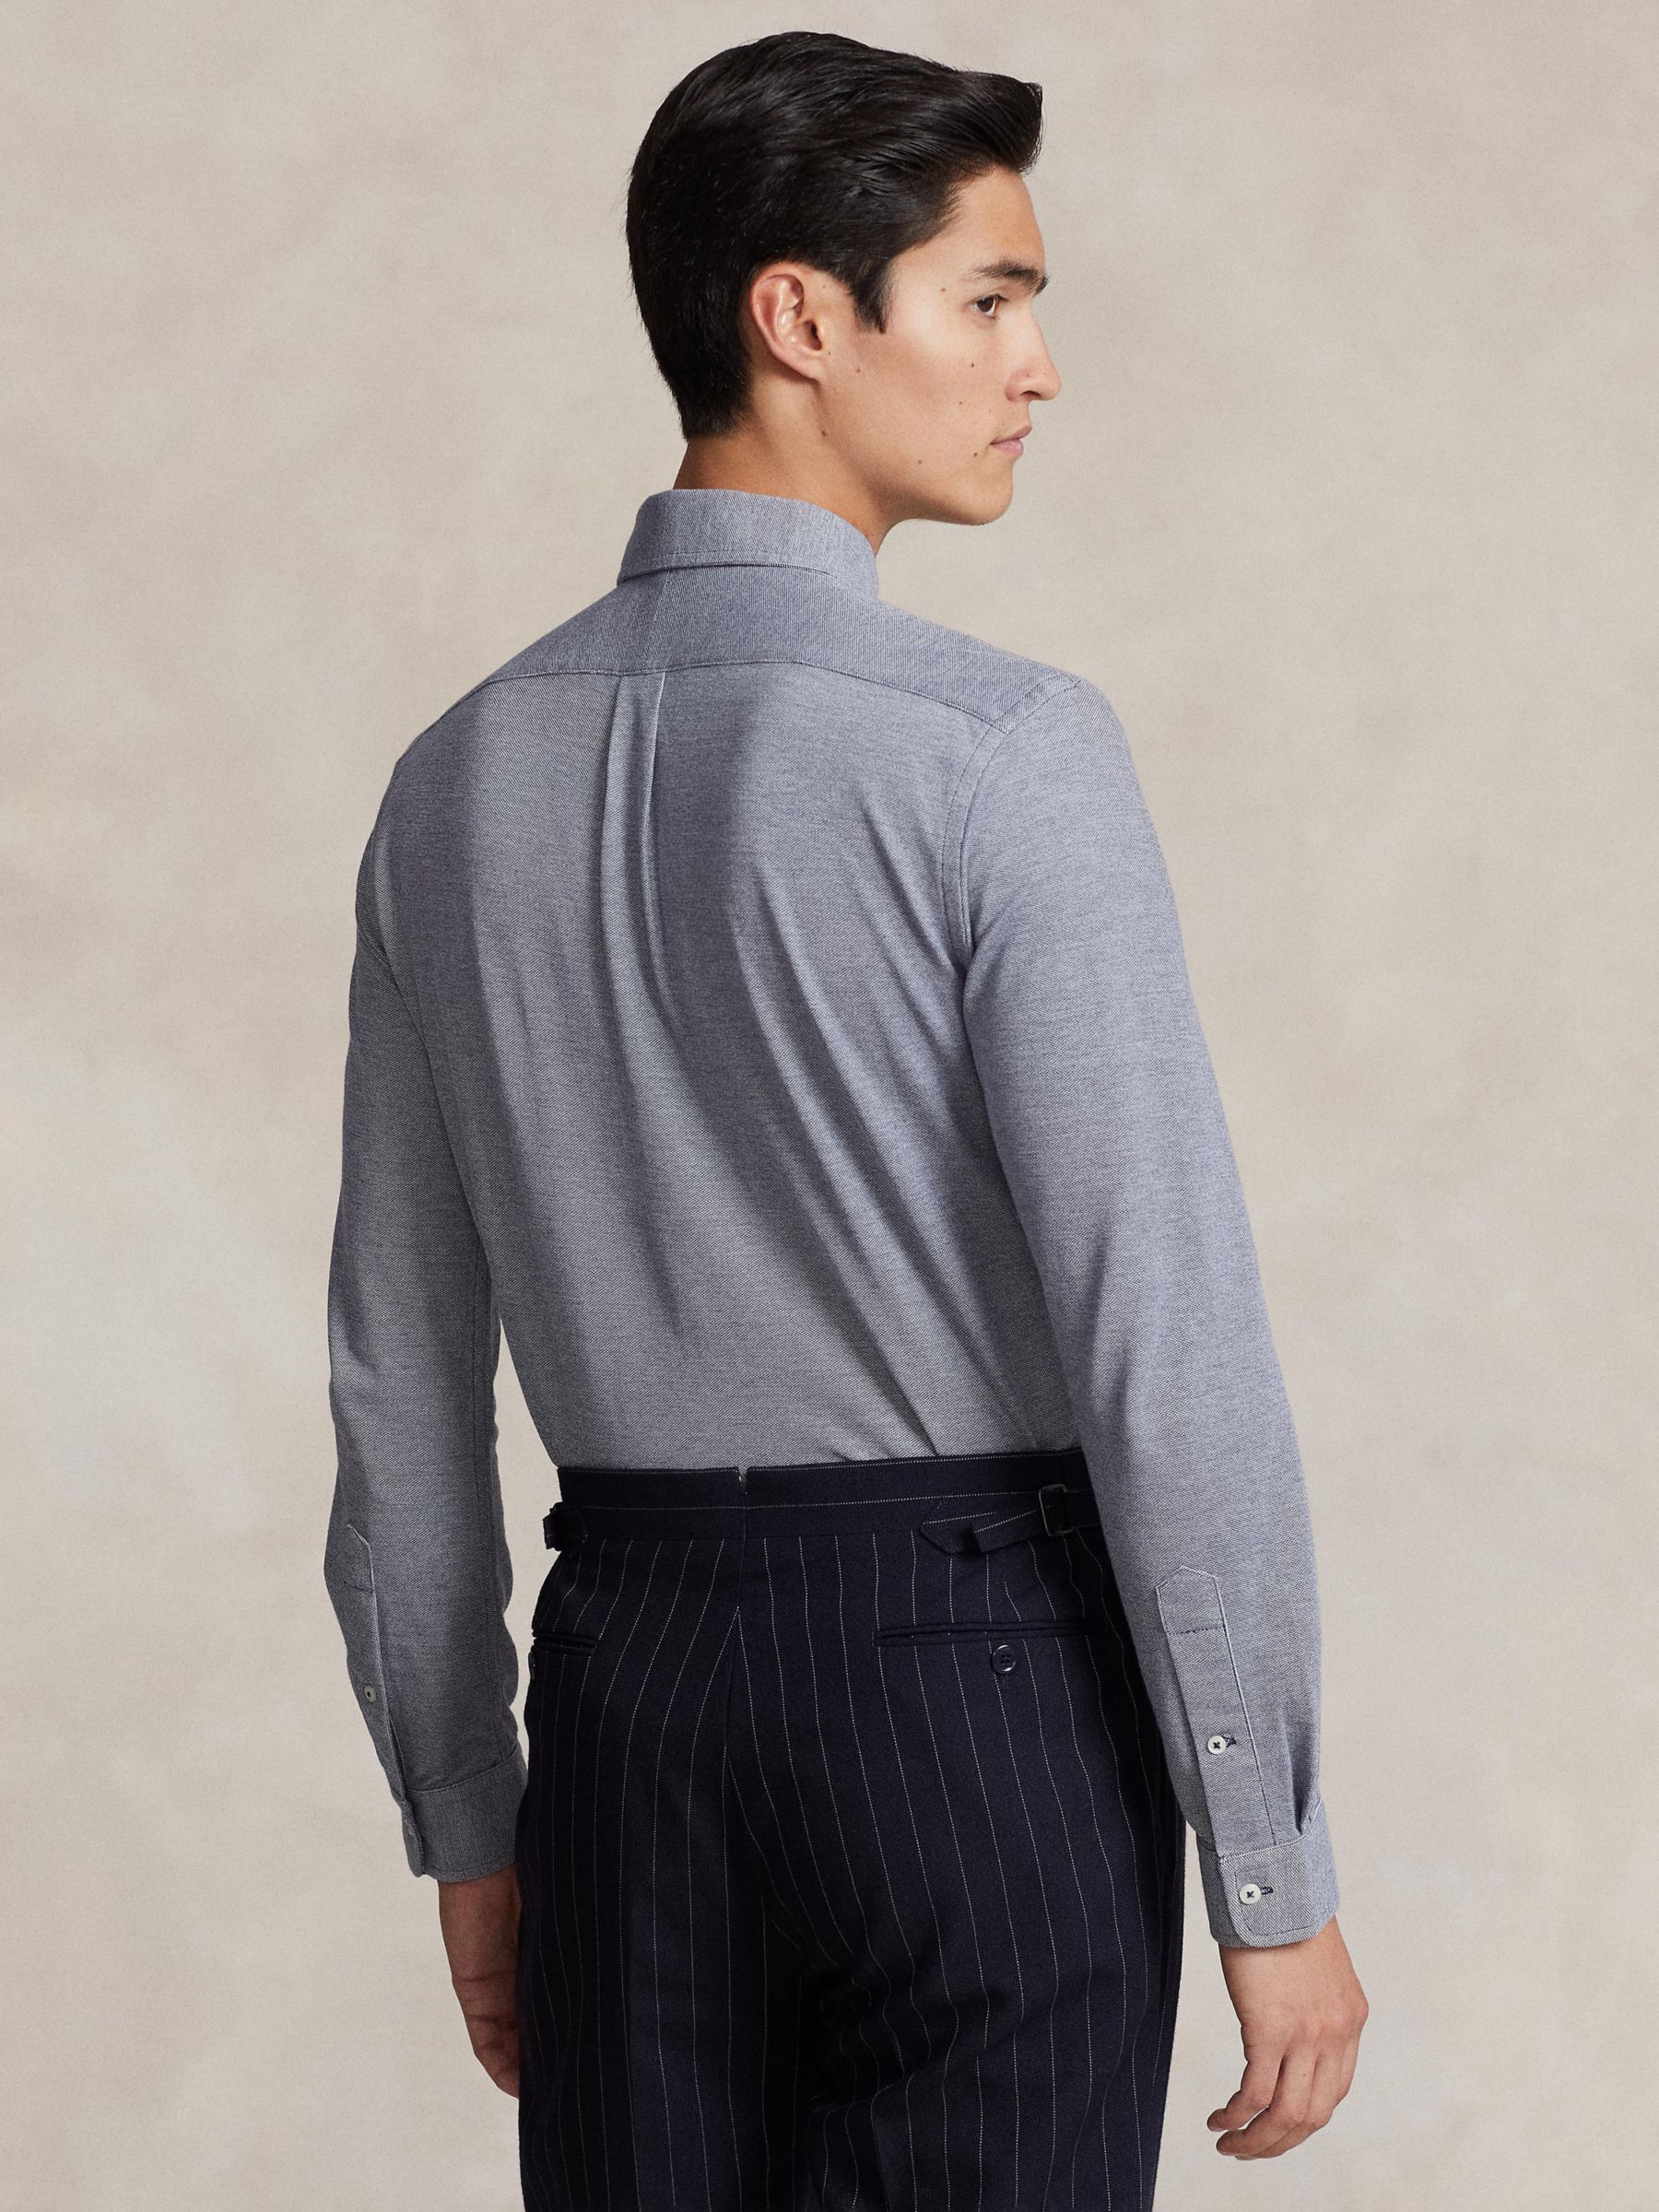 Ralph Lauren Knit Oxford Shirt, Navy, M